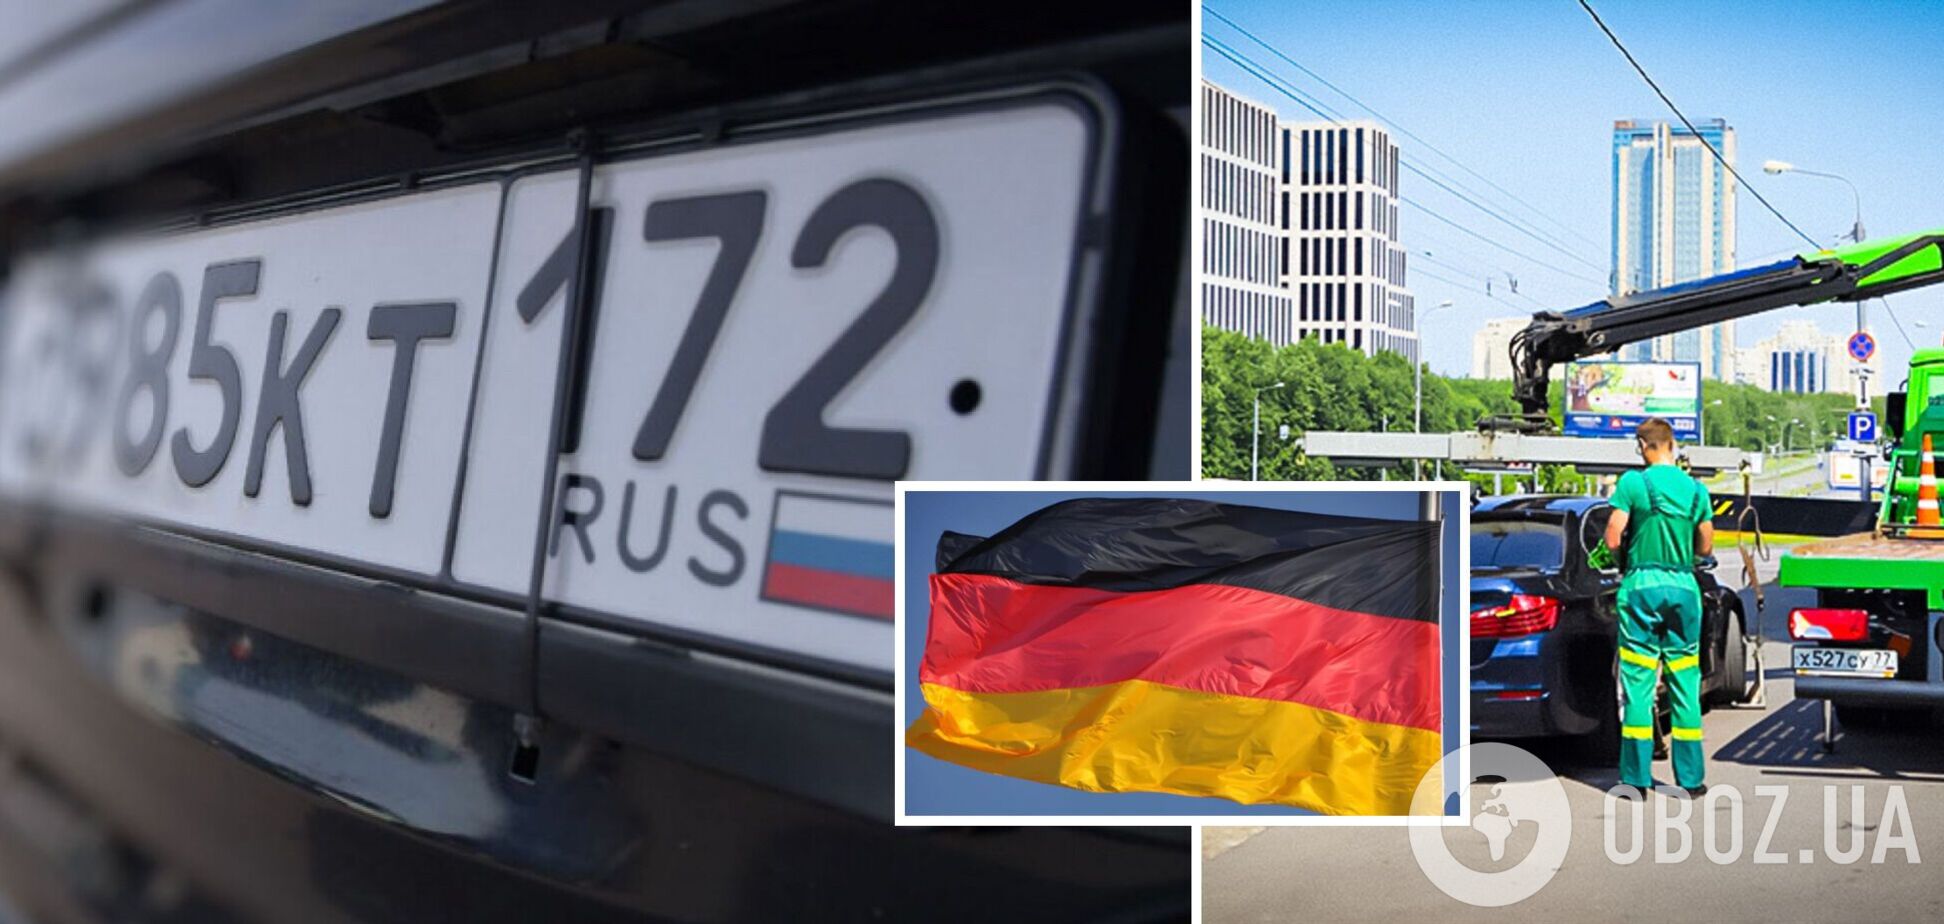 Санкции в действии: в Германии начали массово конфисковывать авто у россиян